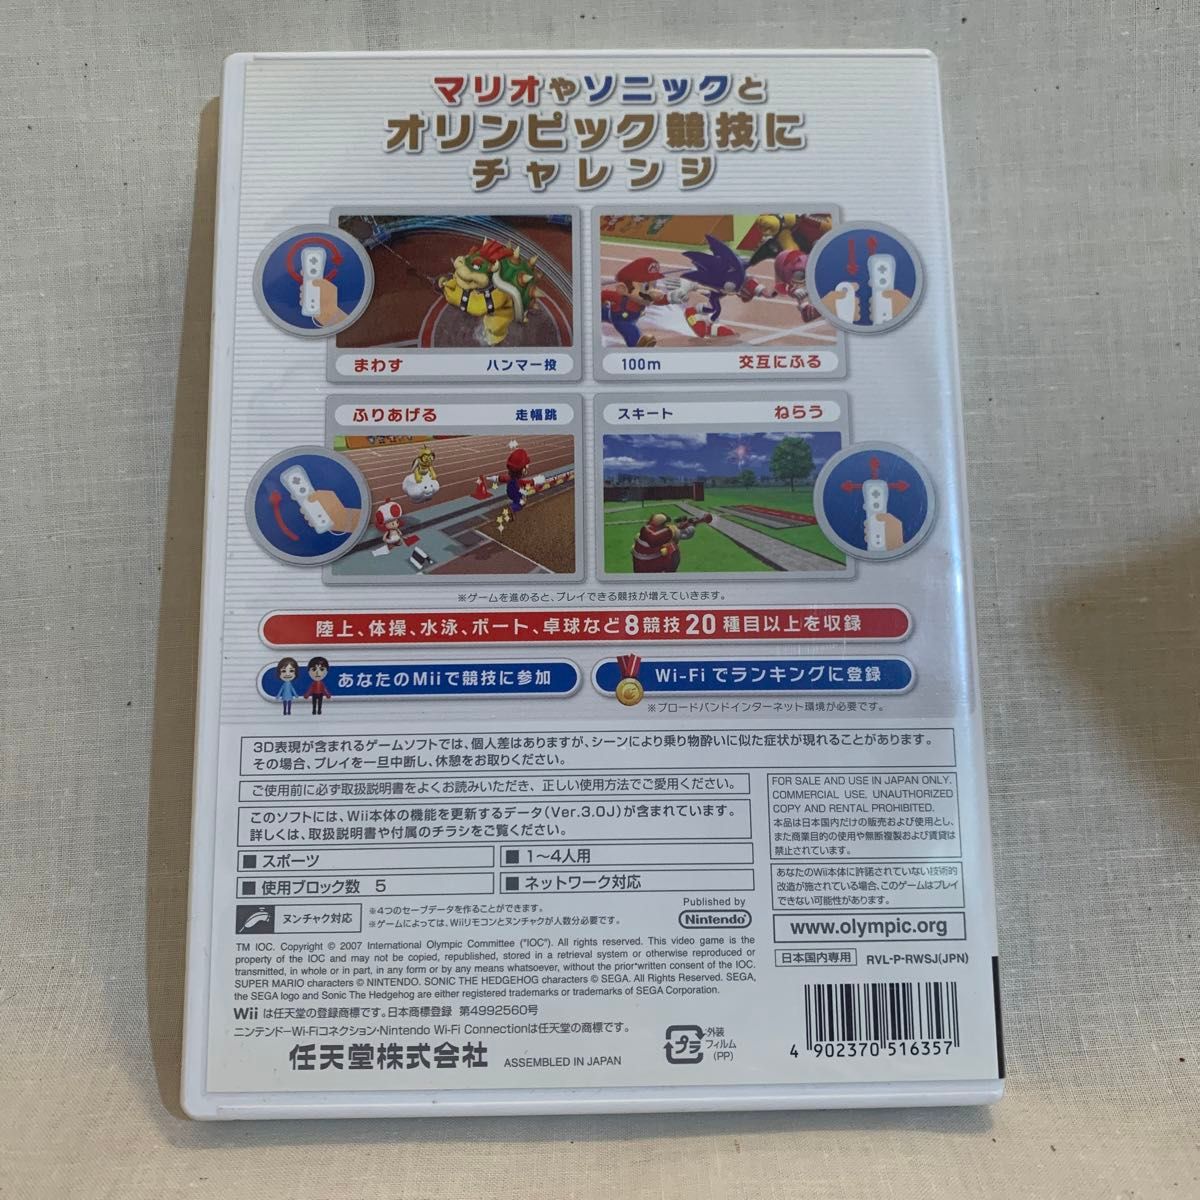 Wii ニンテンドー 任天堂 北京オリンピック ソニック マリオ ソフト ゲームソフト #wiiソフト